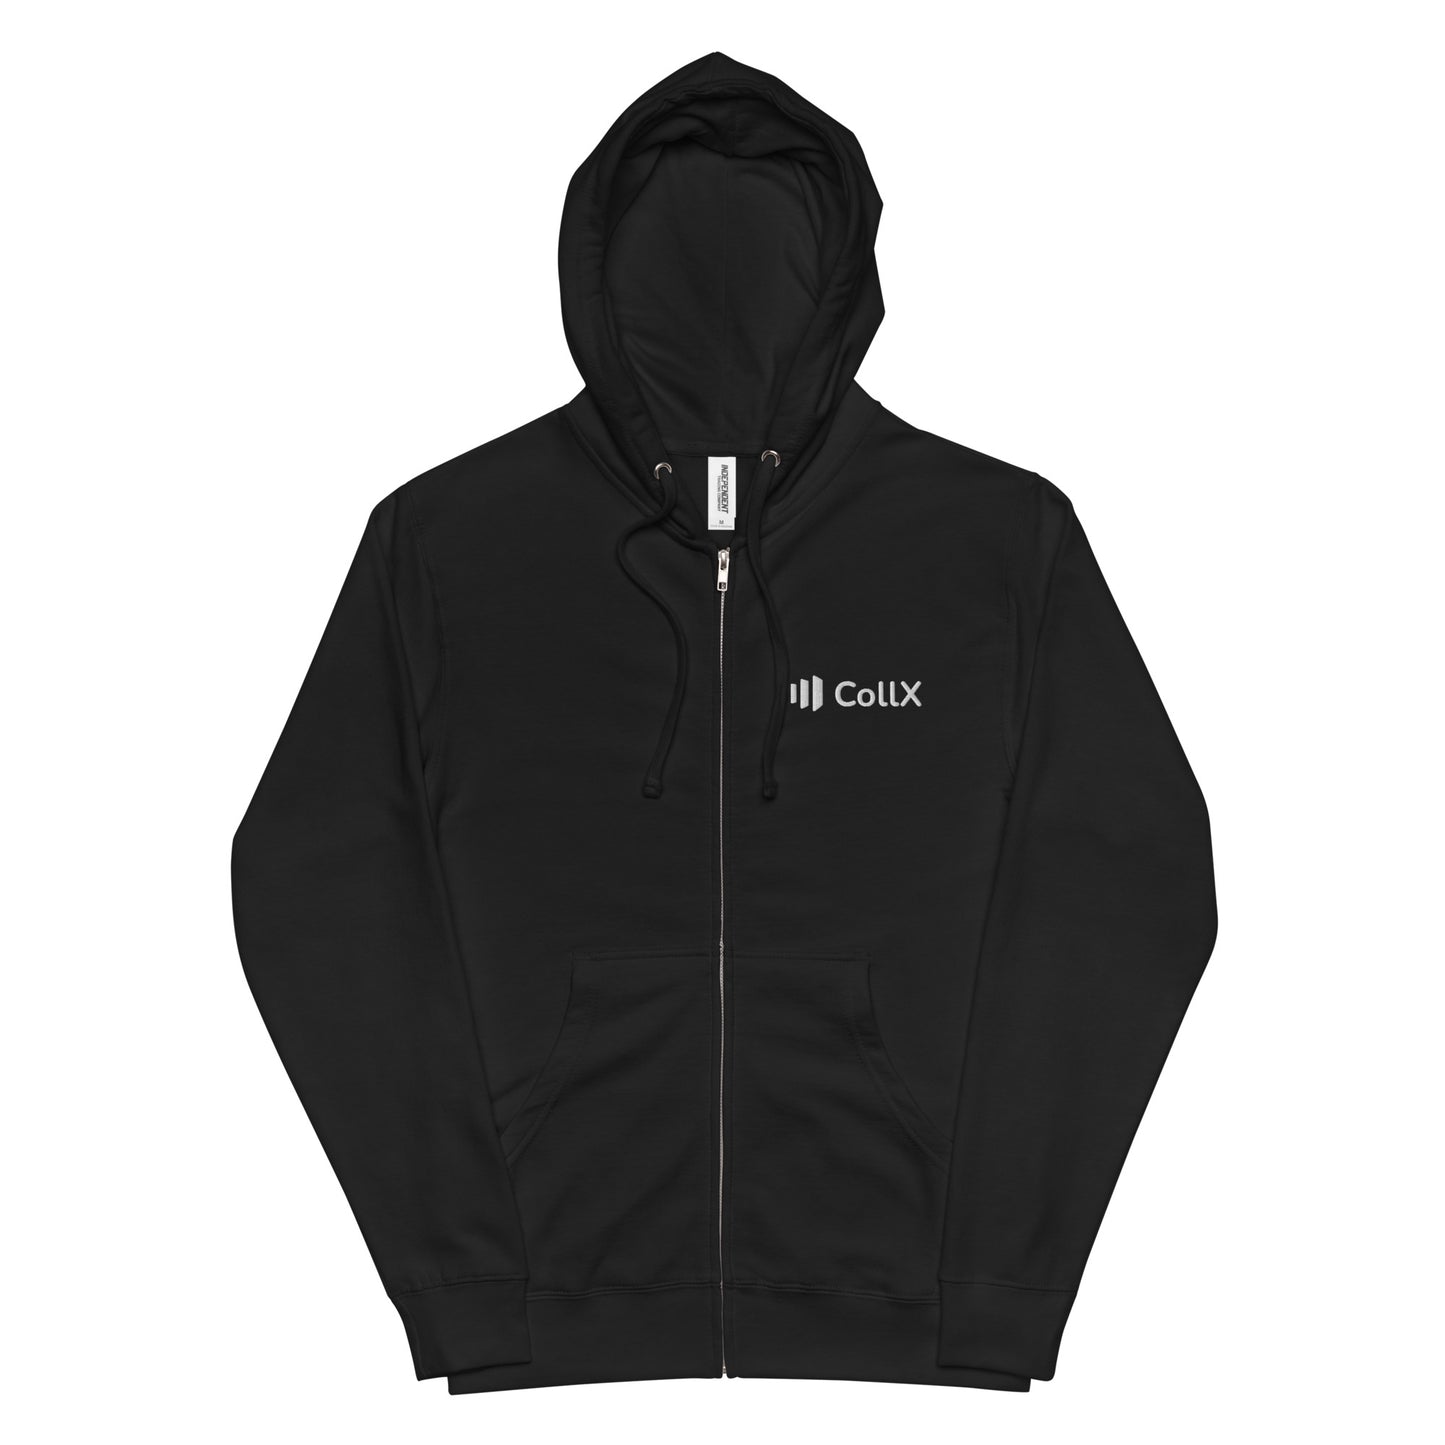 CollX Unisex Fleece Zip Hoodie